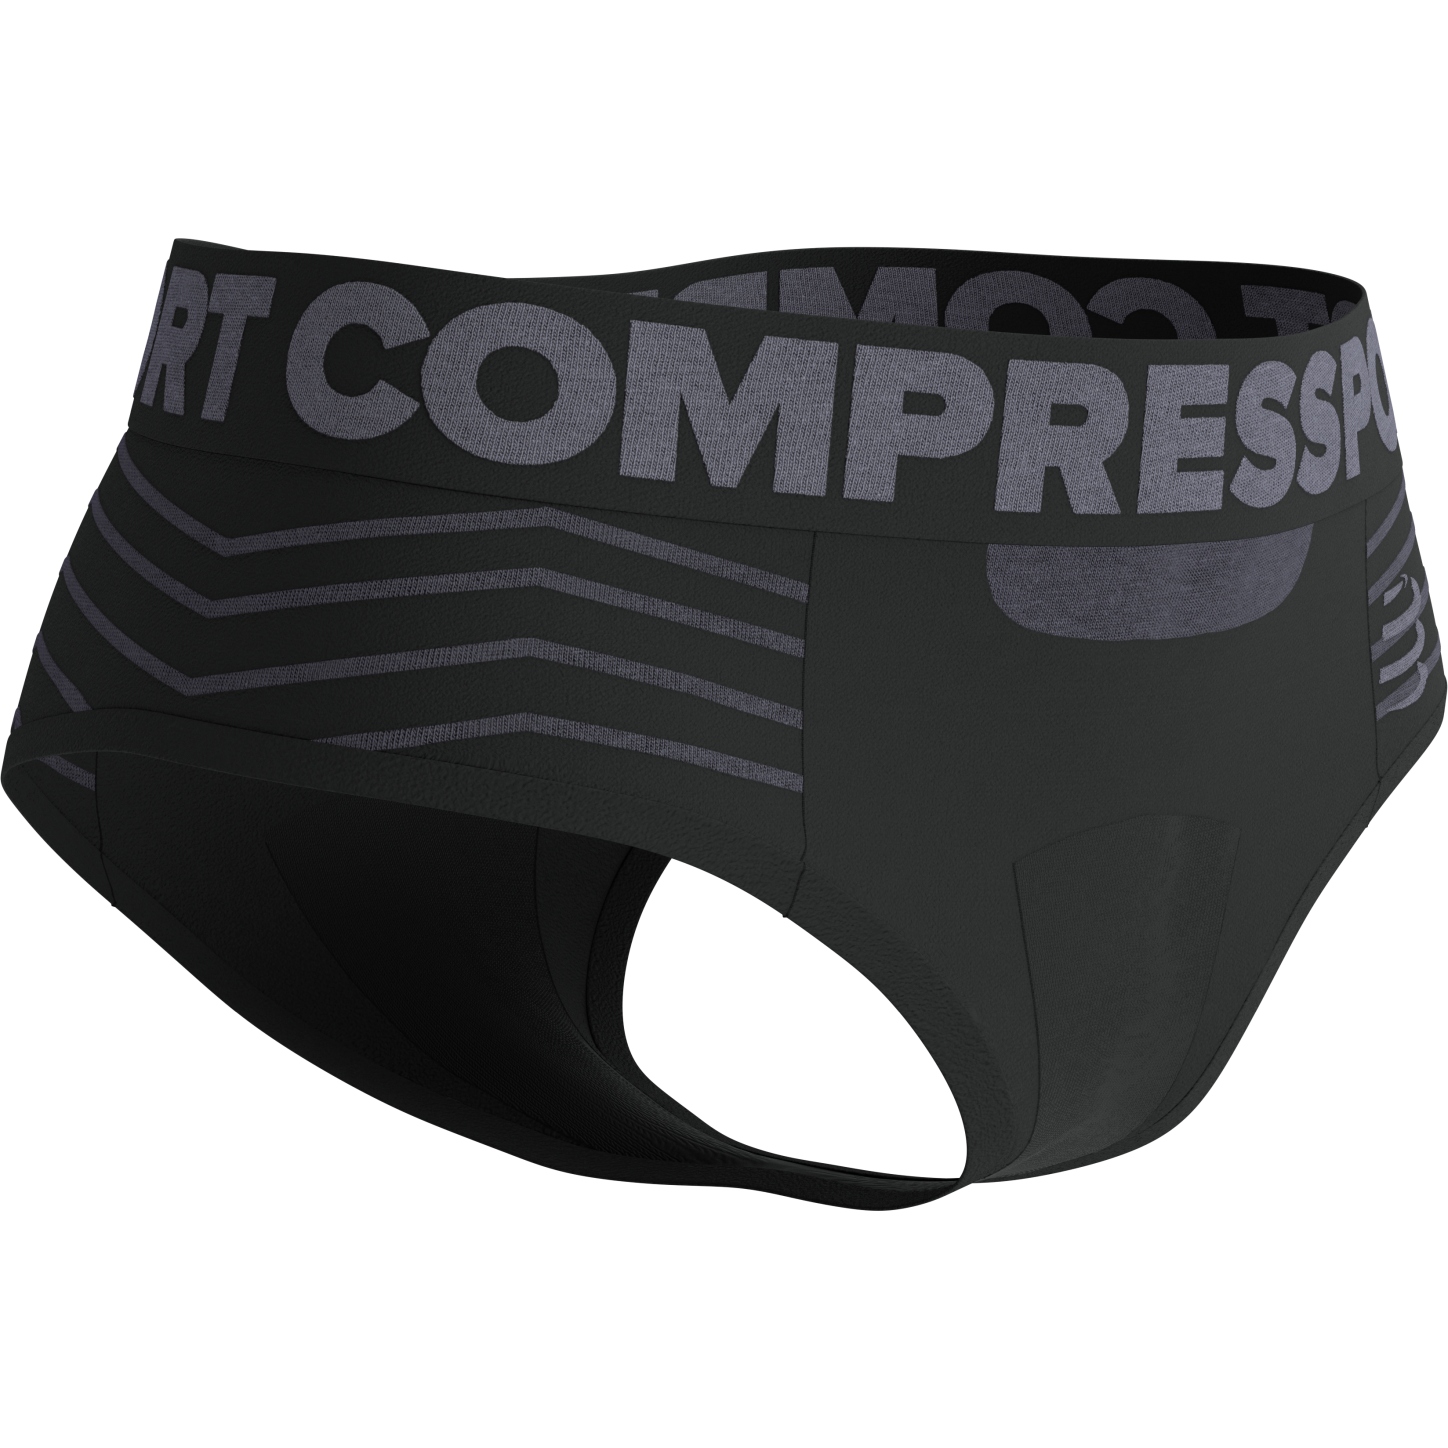 Produktbild von Compressport Seamless Boxershorts Damen - schwarz/grau